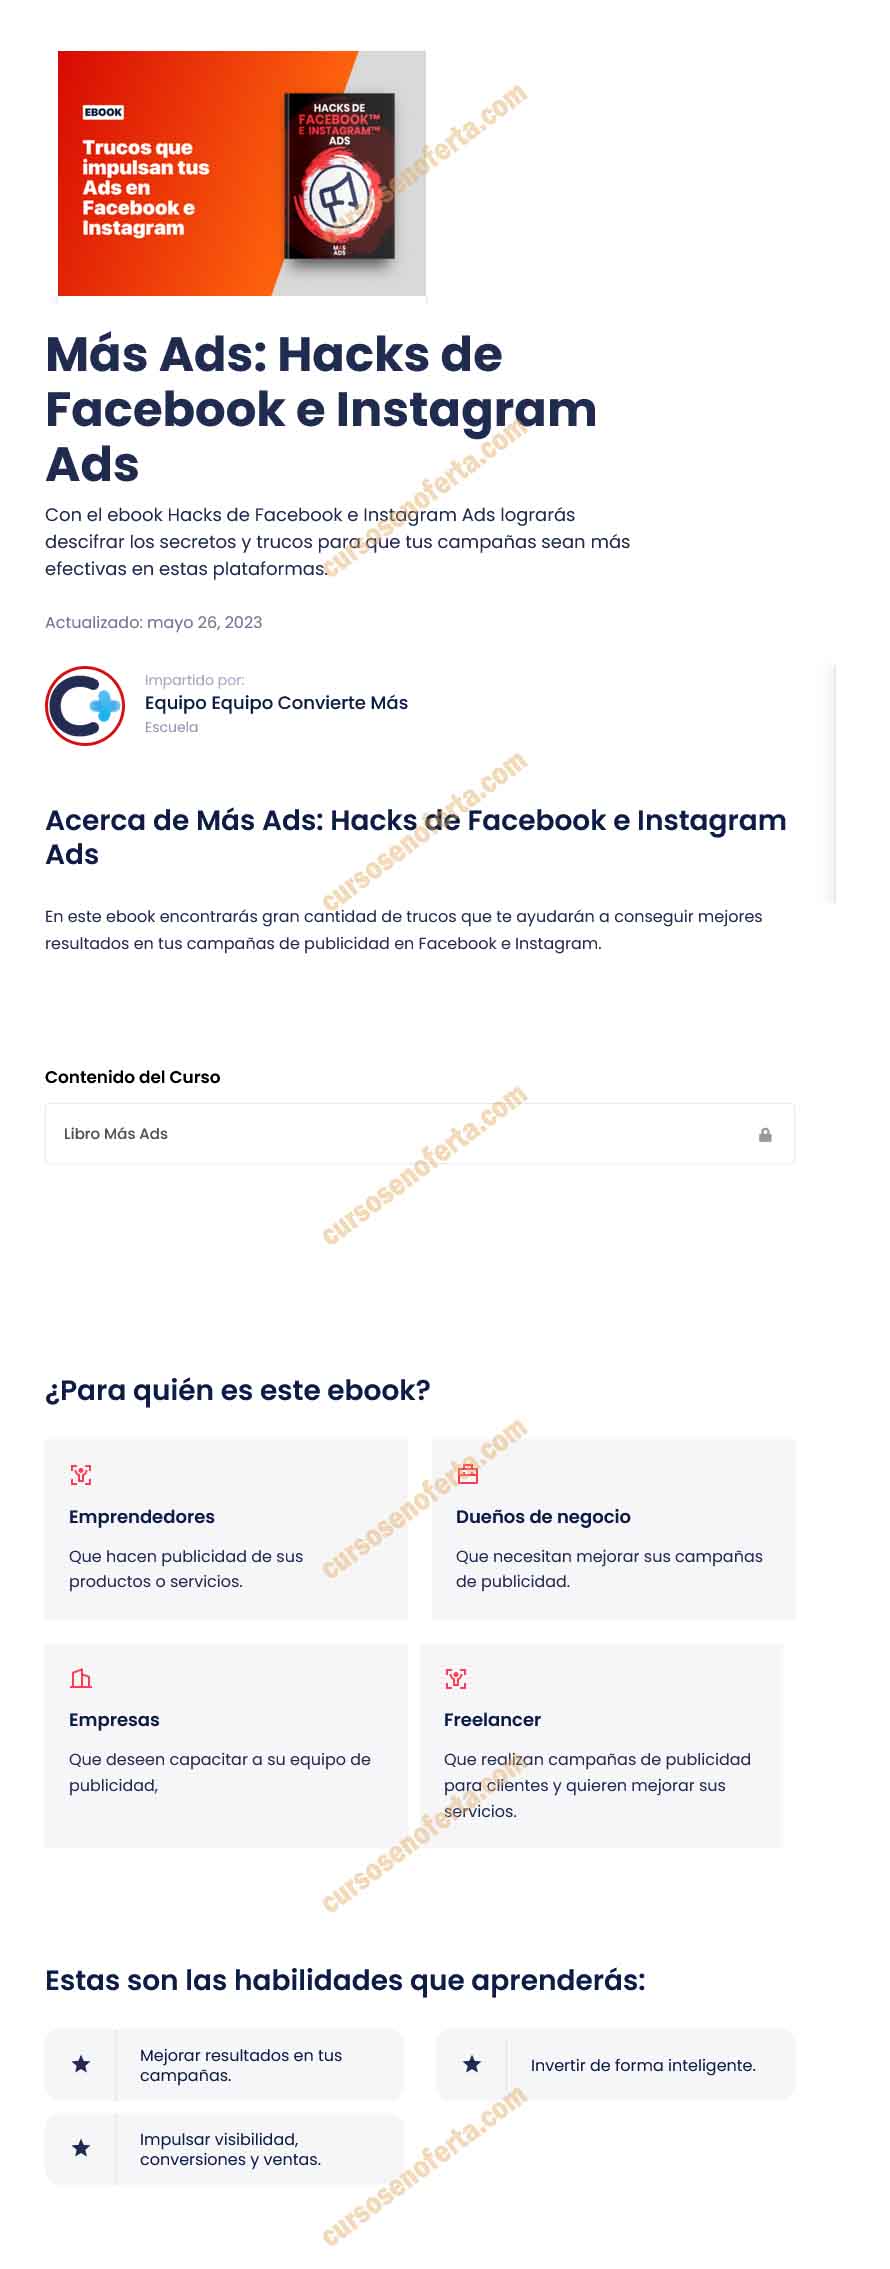 Más Ads Hacks de Facebook e Instagram Ads - Convierte Más